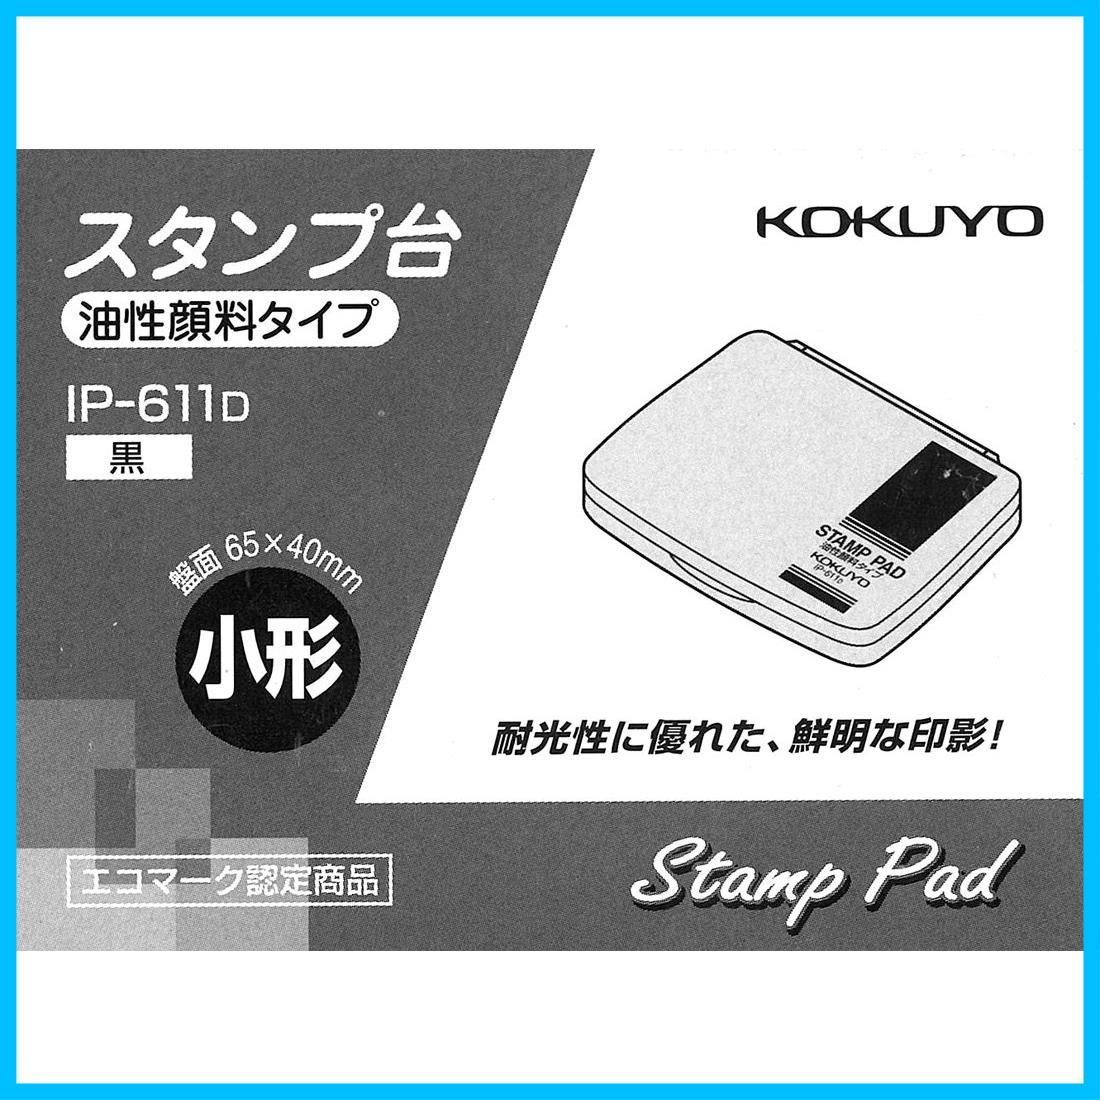 コクヨ(KOKUYO) スタンプインキ 顔料タイプ 黒 IP-690D - 朱肉・スタンプ台